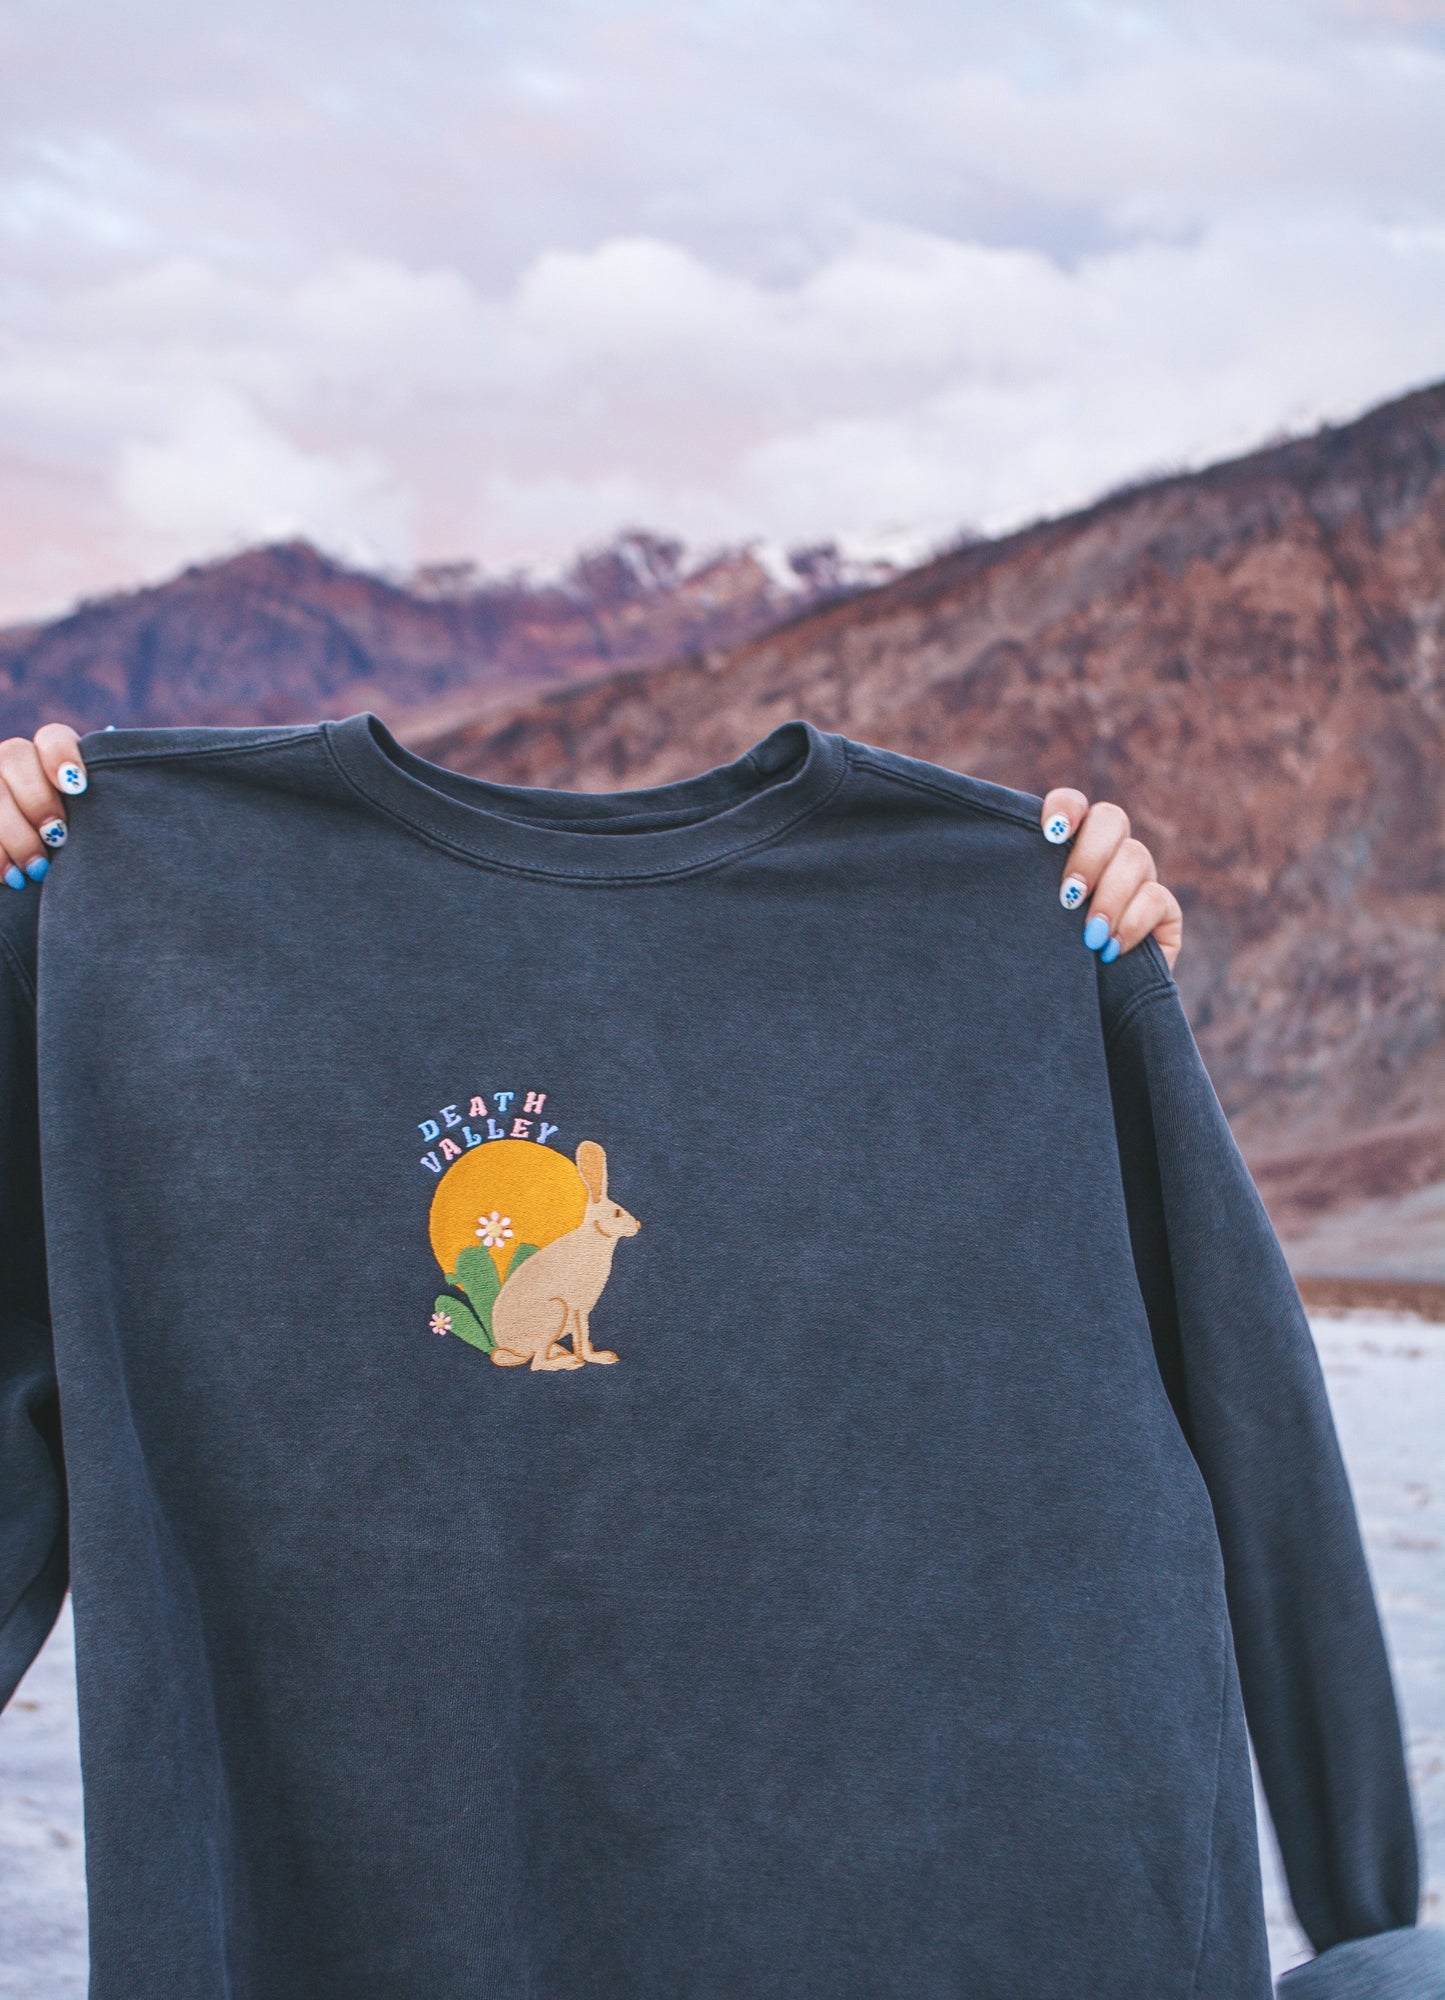 Death Valley National Park Sweatshirt